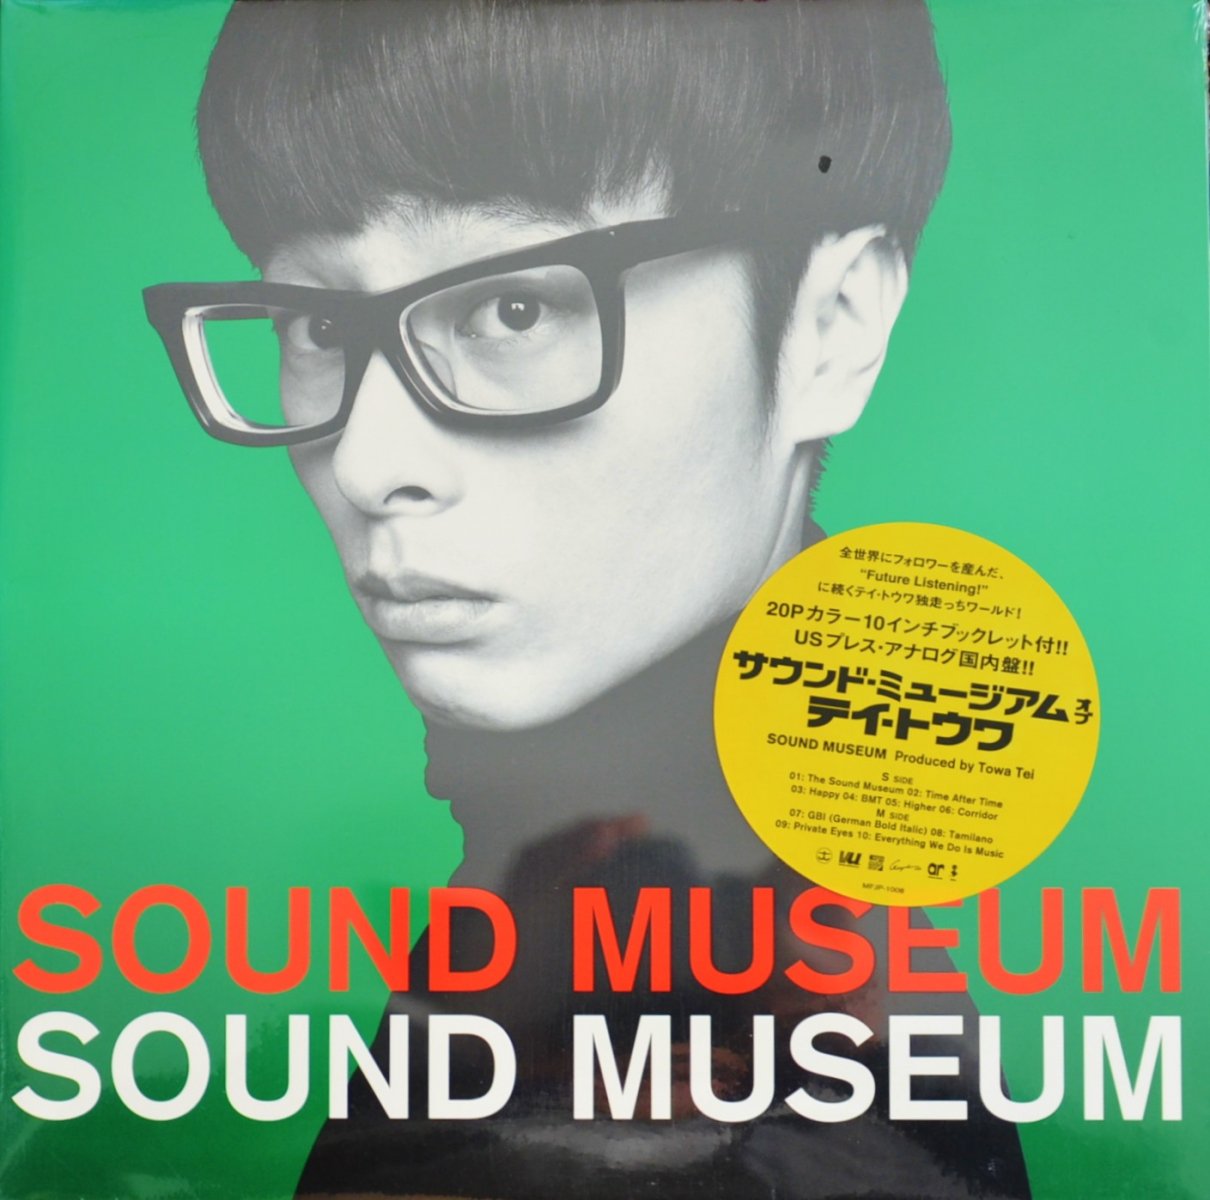 テイ・トウワ TOWA TEI / サウンド・ミュージアム SOUND MUSEUM (1LP)